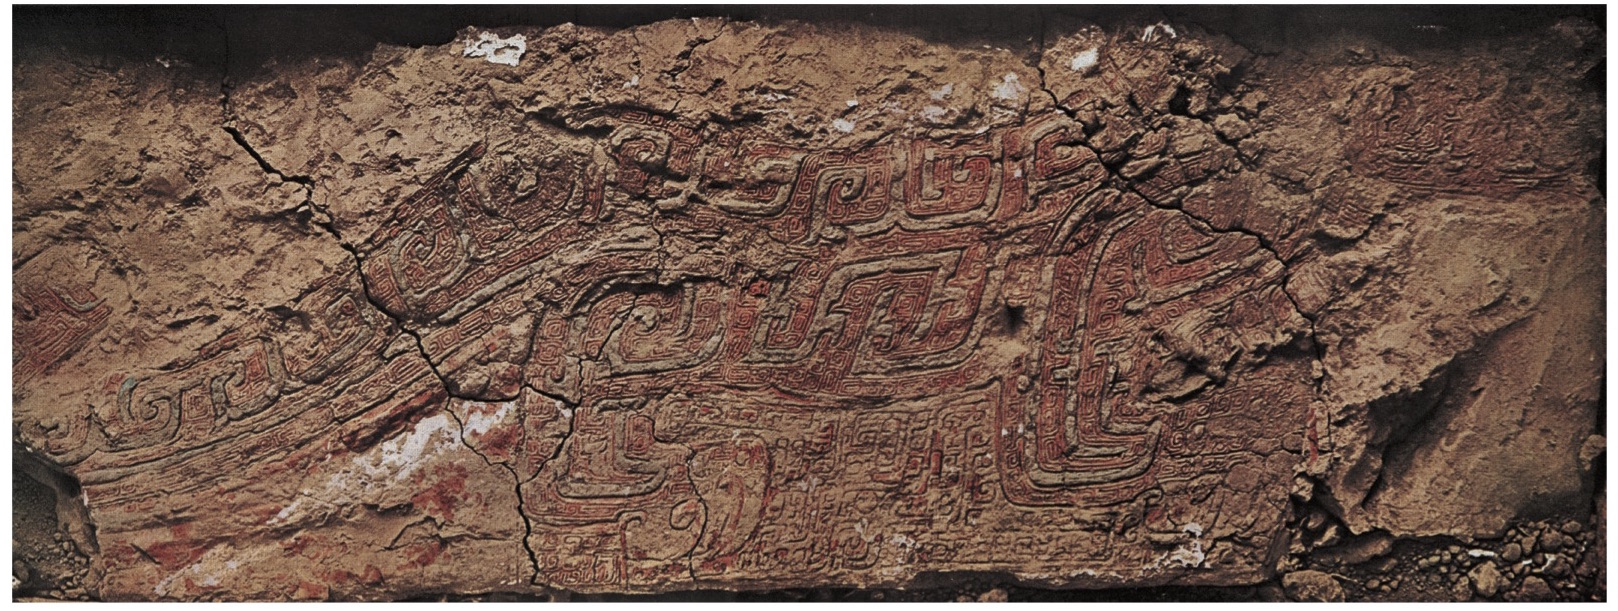 〔图 I〕殷墟漆器雕板印影，纵约12厘米,横约90厘米, 安阳侯家庄第1001号大墓出